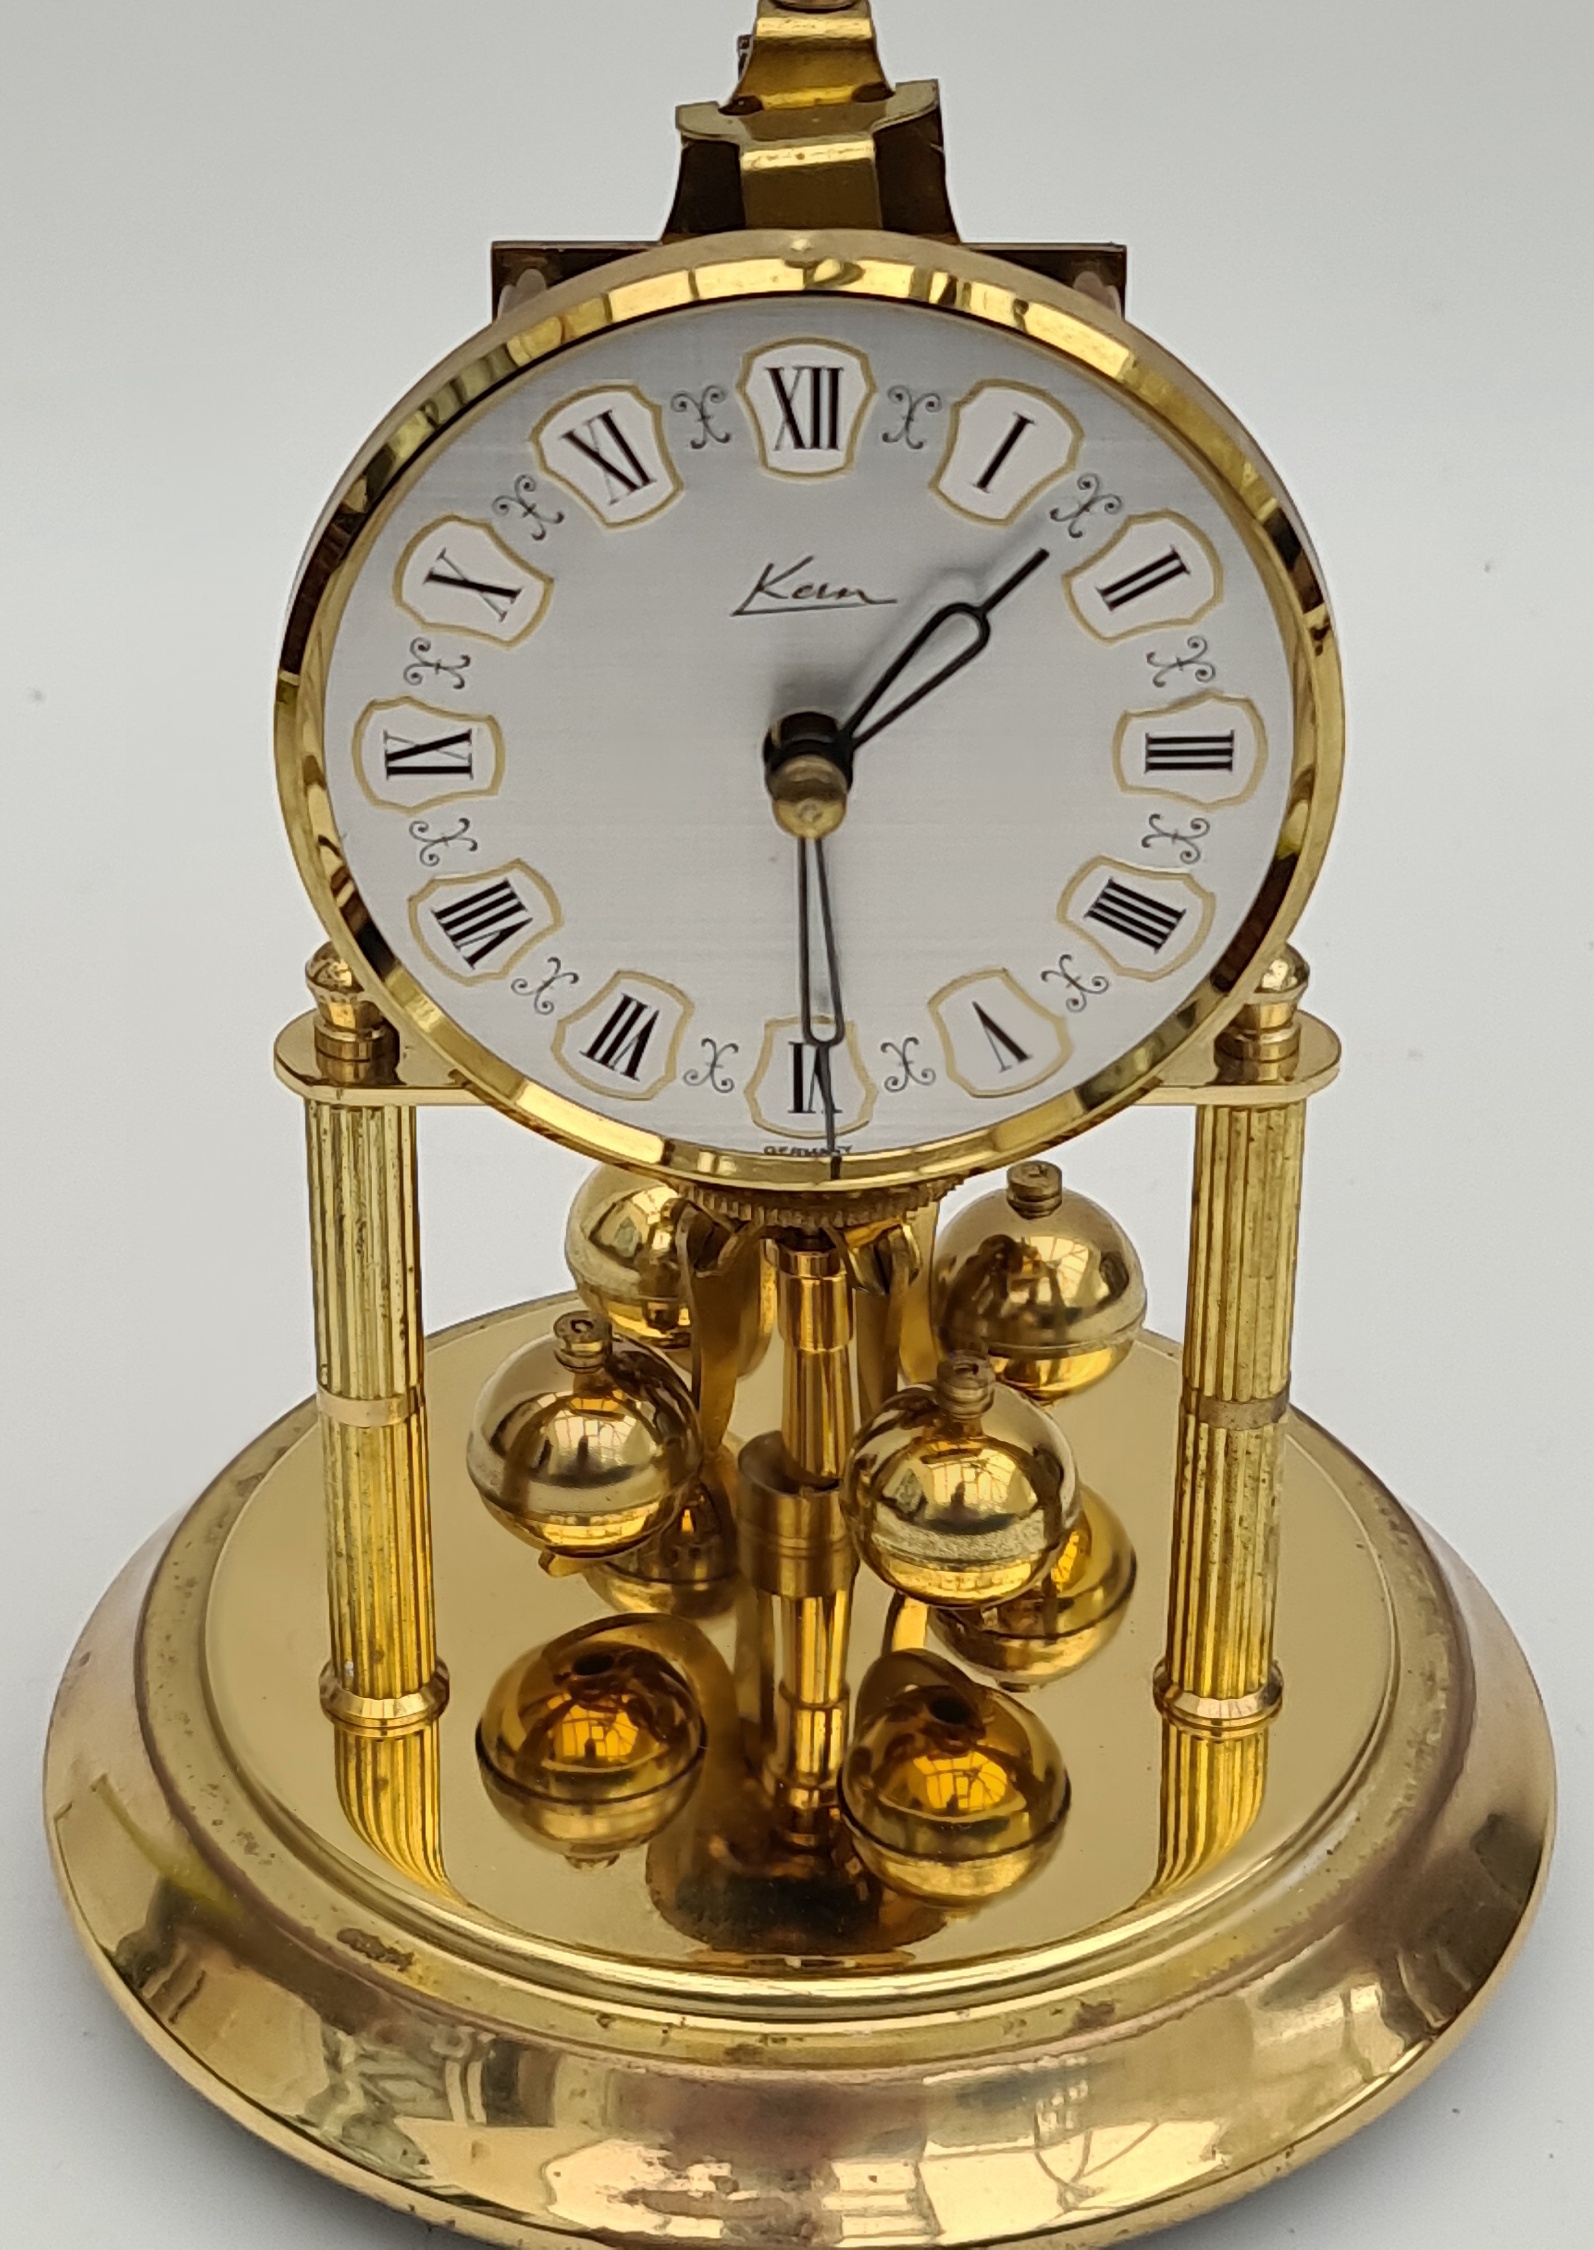 Vintage Domed Mantel Clock German Make - Image 4 of 4